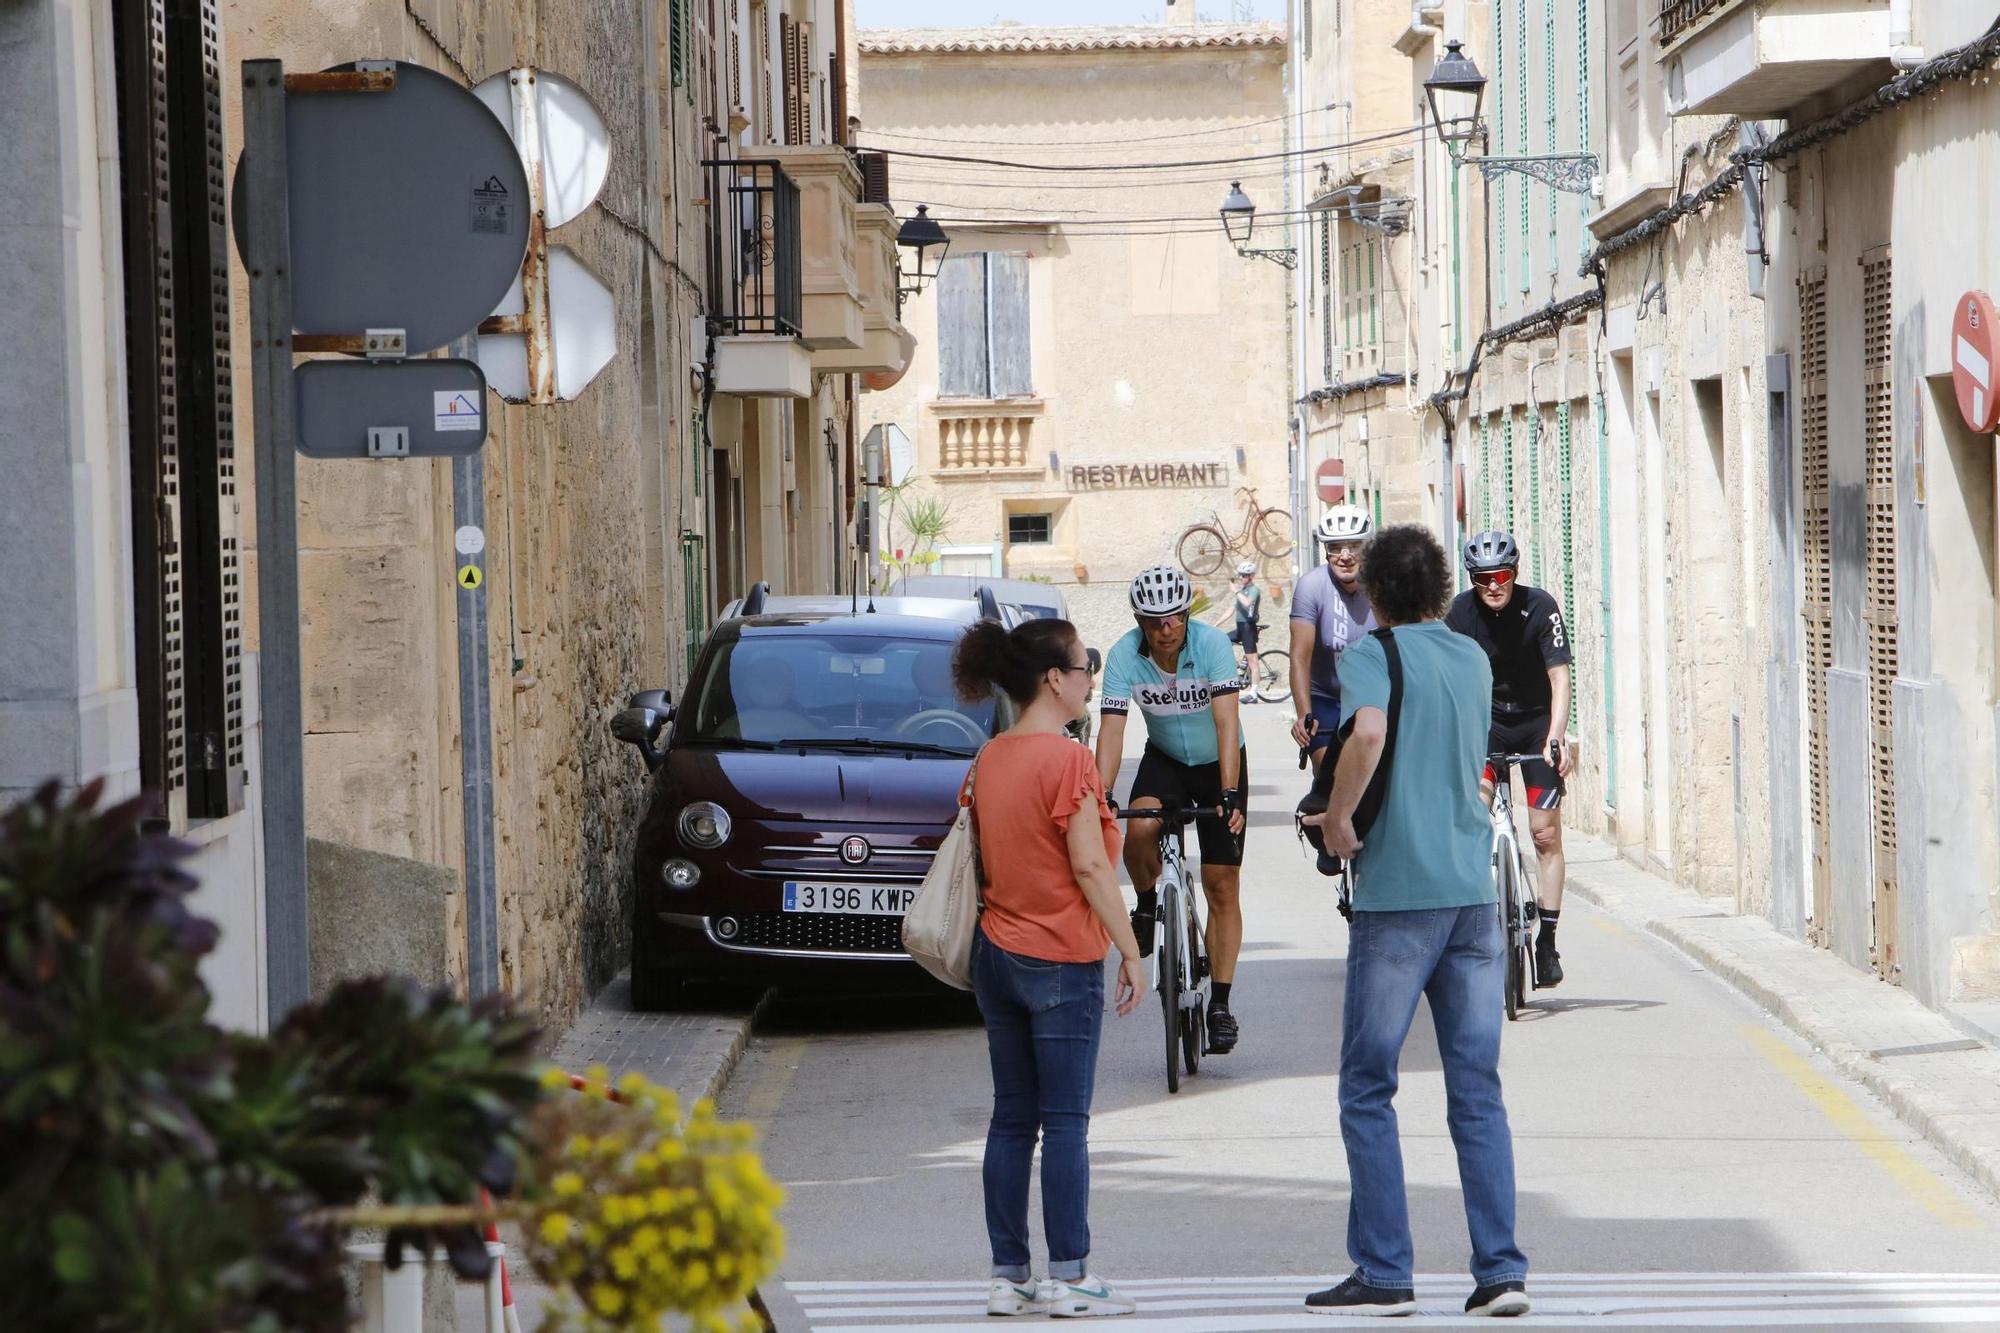 Die Radsport-Saison auf Mallorca hat begonnen – so sieht es im Radler-Hotspot Petra aus